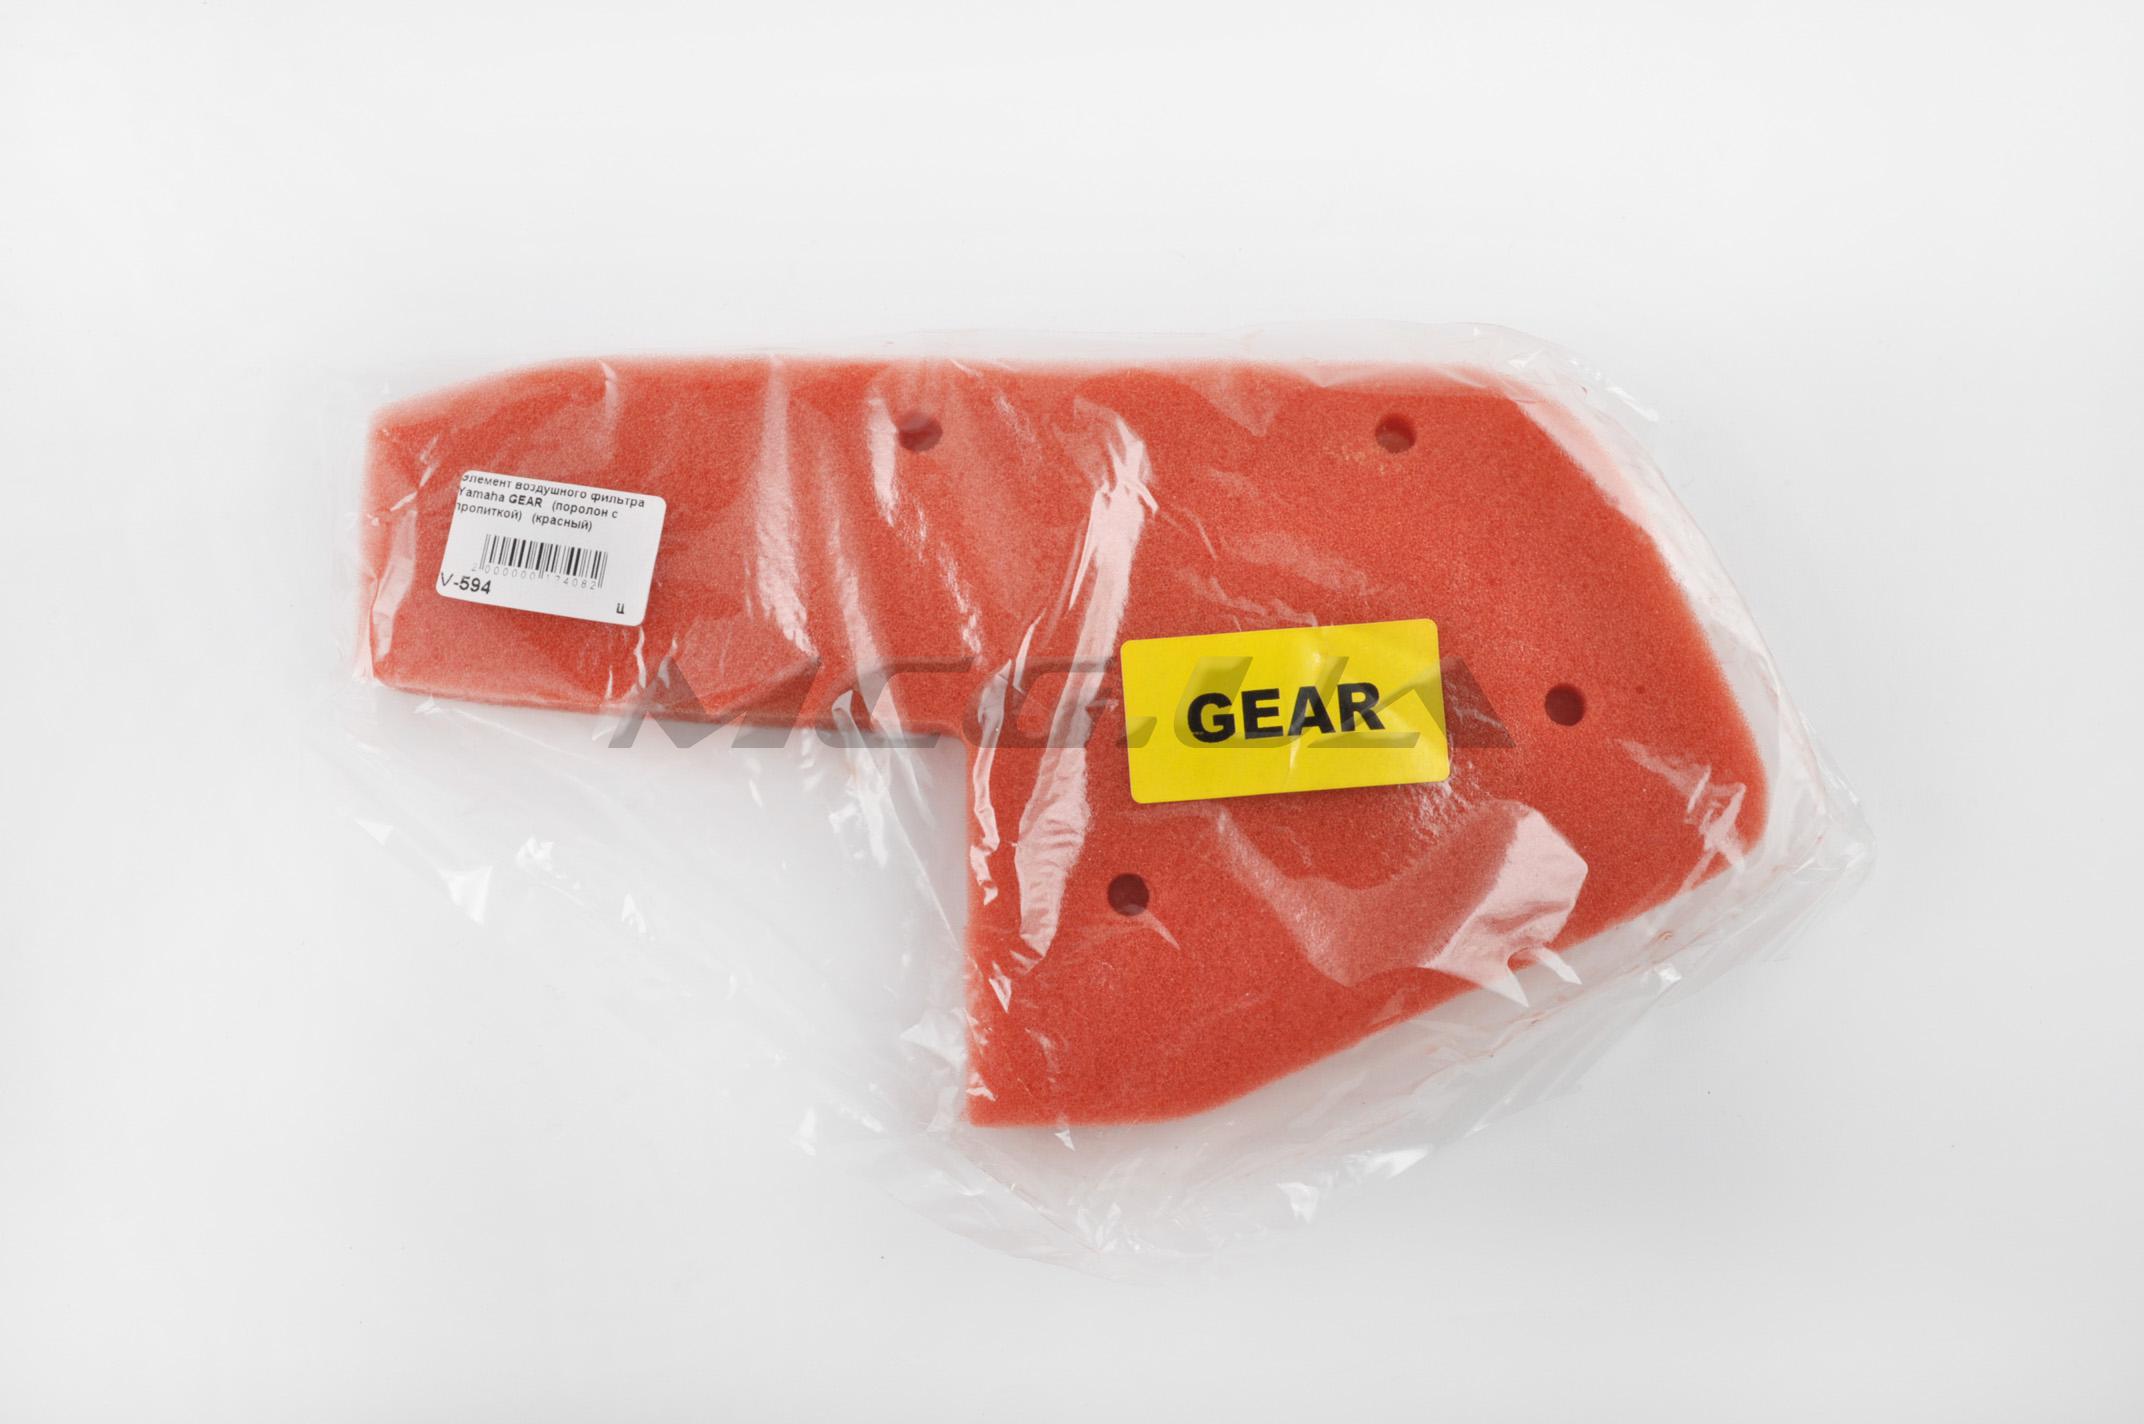 Элемент воздушного фильтра Yamaha GEAR (поролон с пропиткой) (красный)